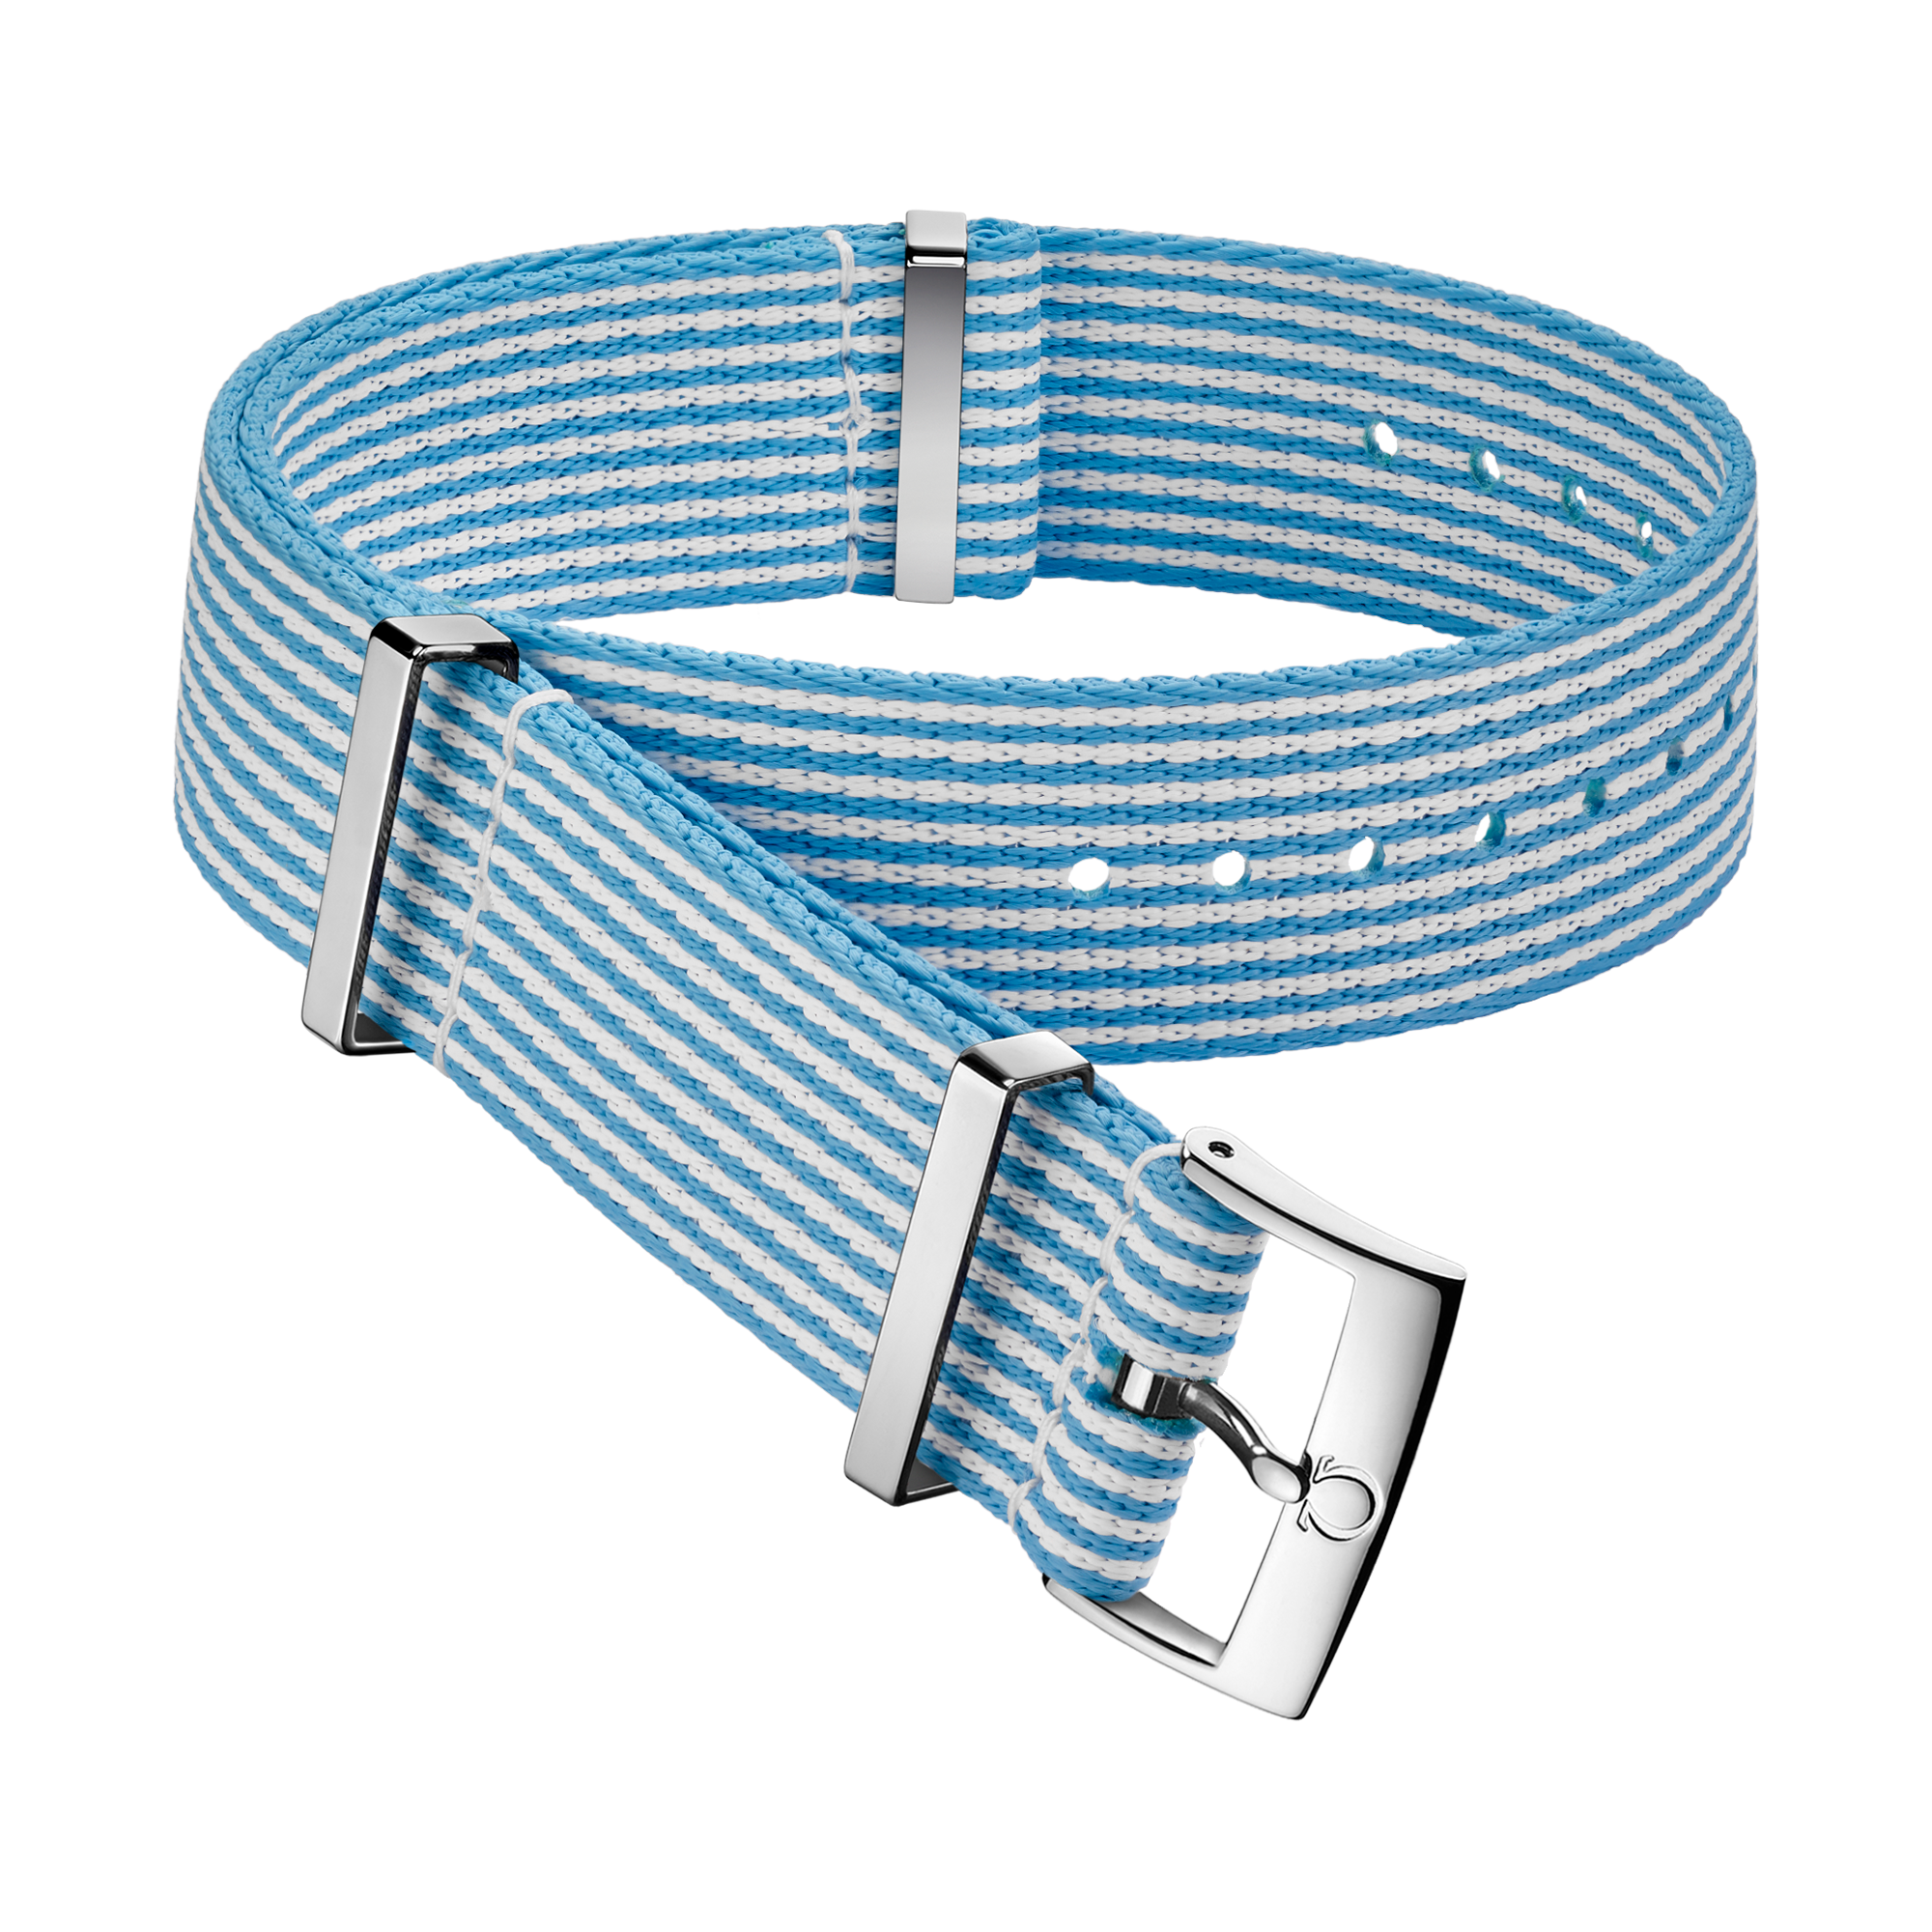 Bracelete NATO - Bracelete em poliamida azul e branca às riscas - 031CWZ010682